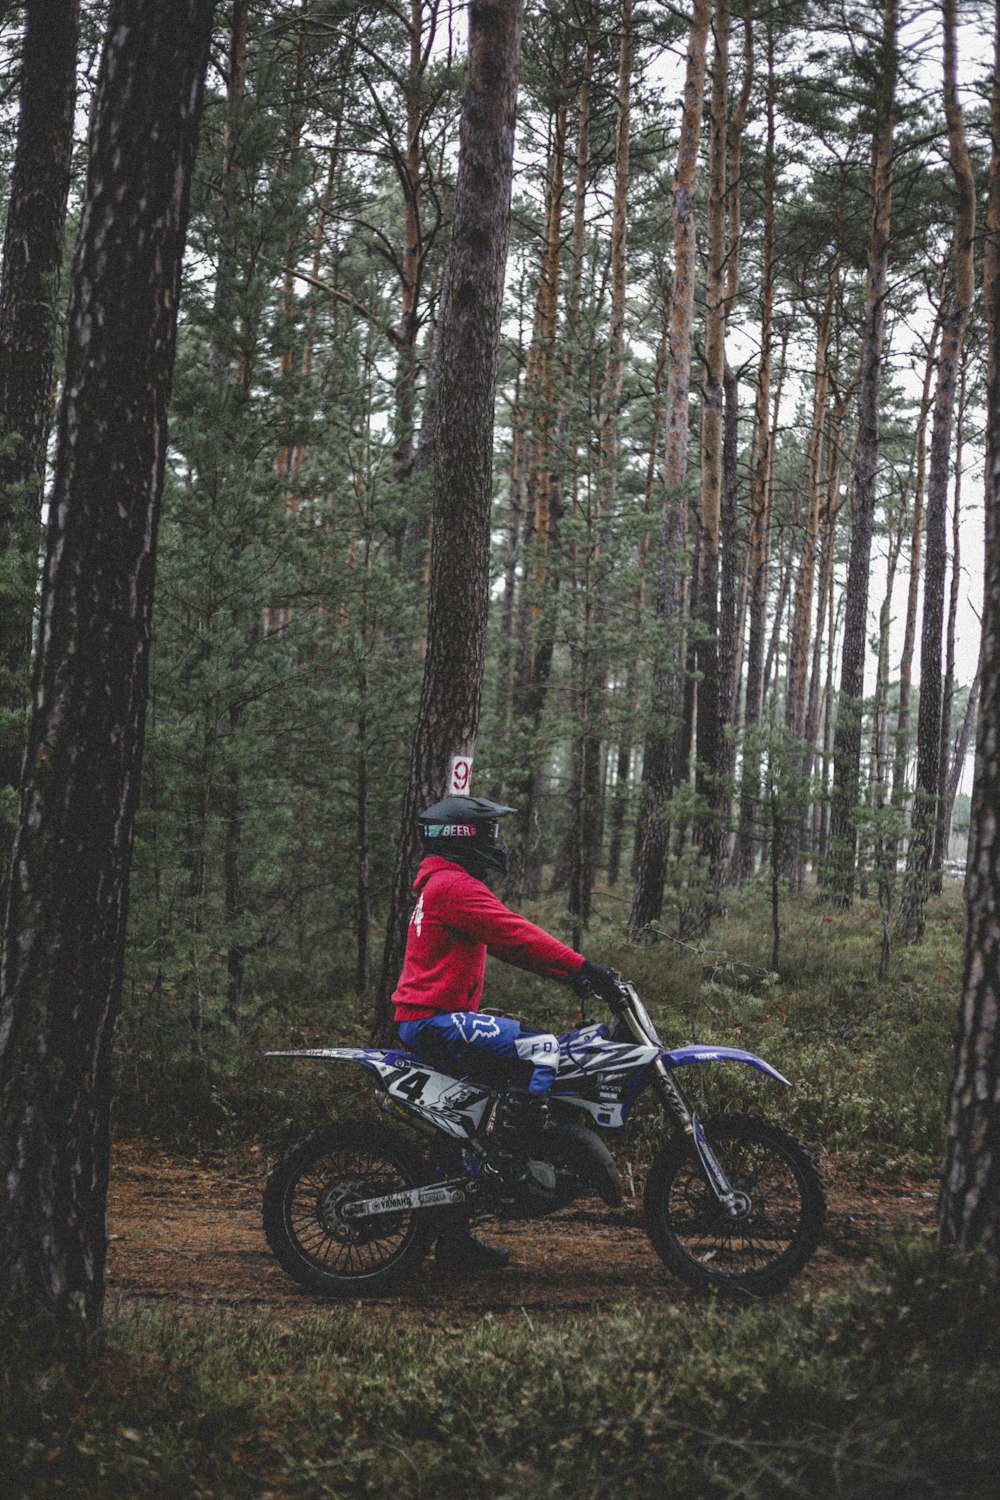 a man riding a dirt bike through a forest